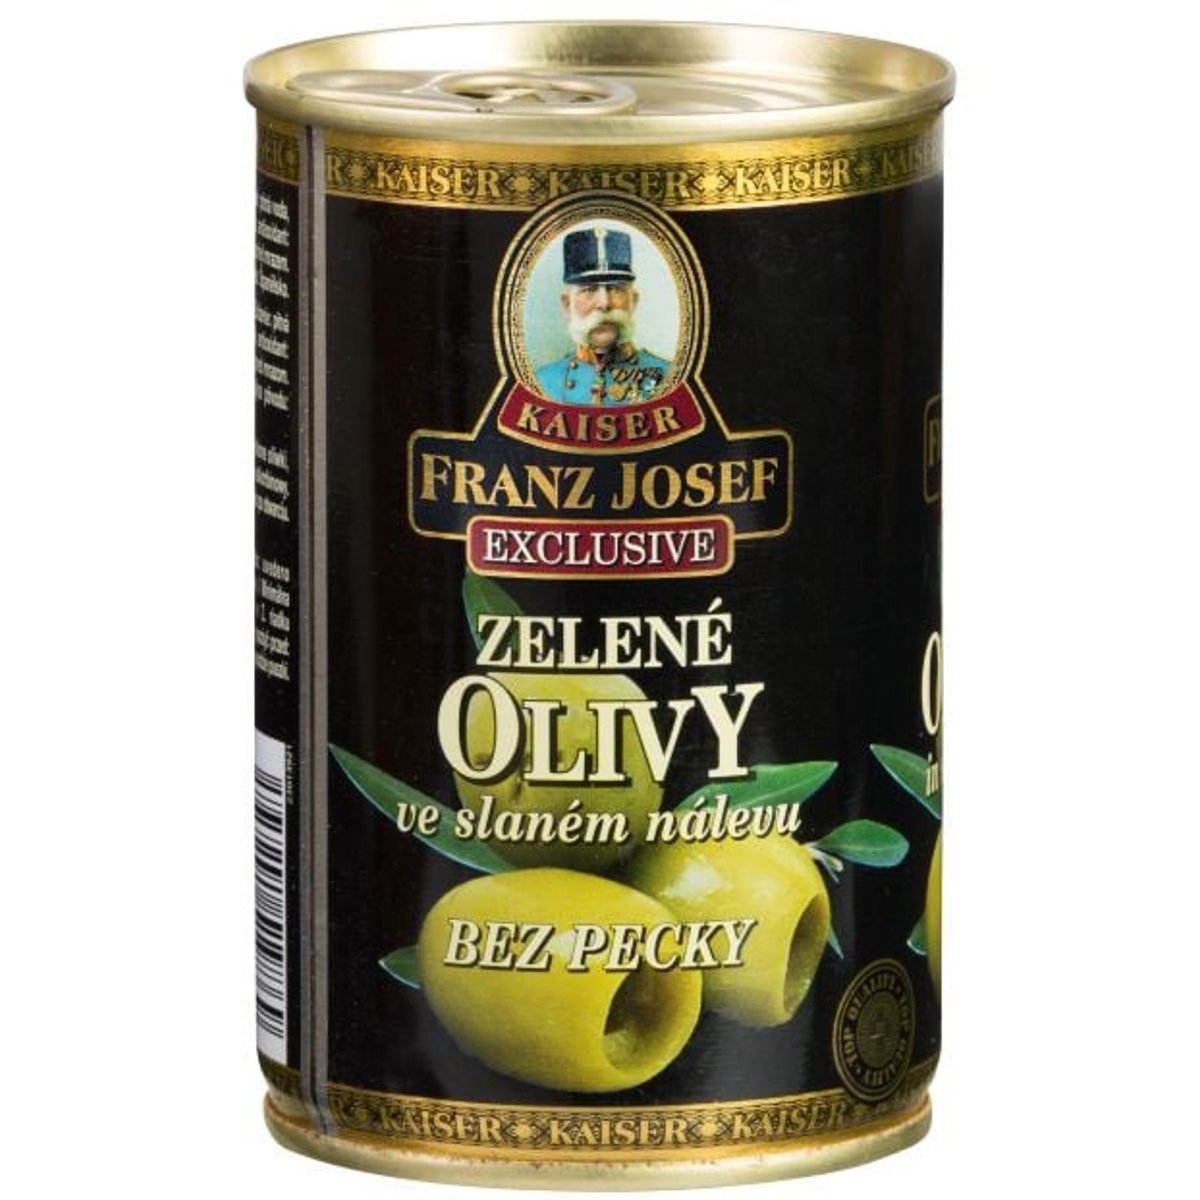 Franz Josef Kaiser Olivy zelené bez pecky ve slaném nálevu